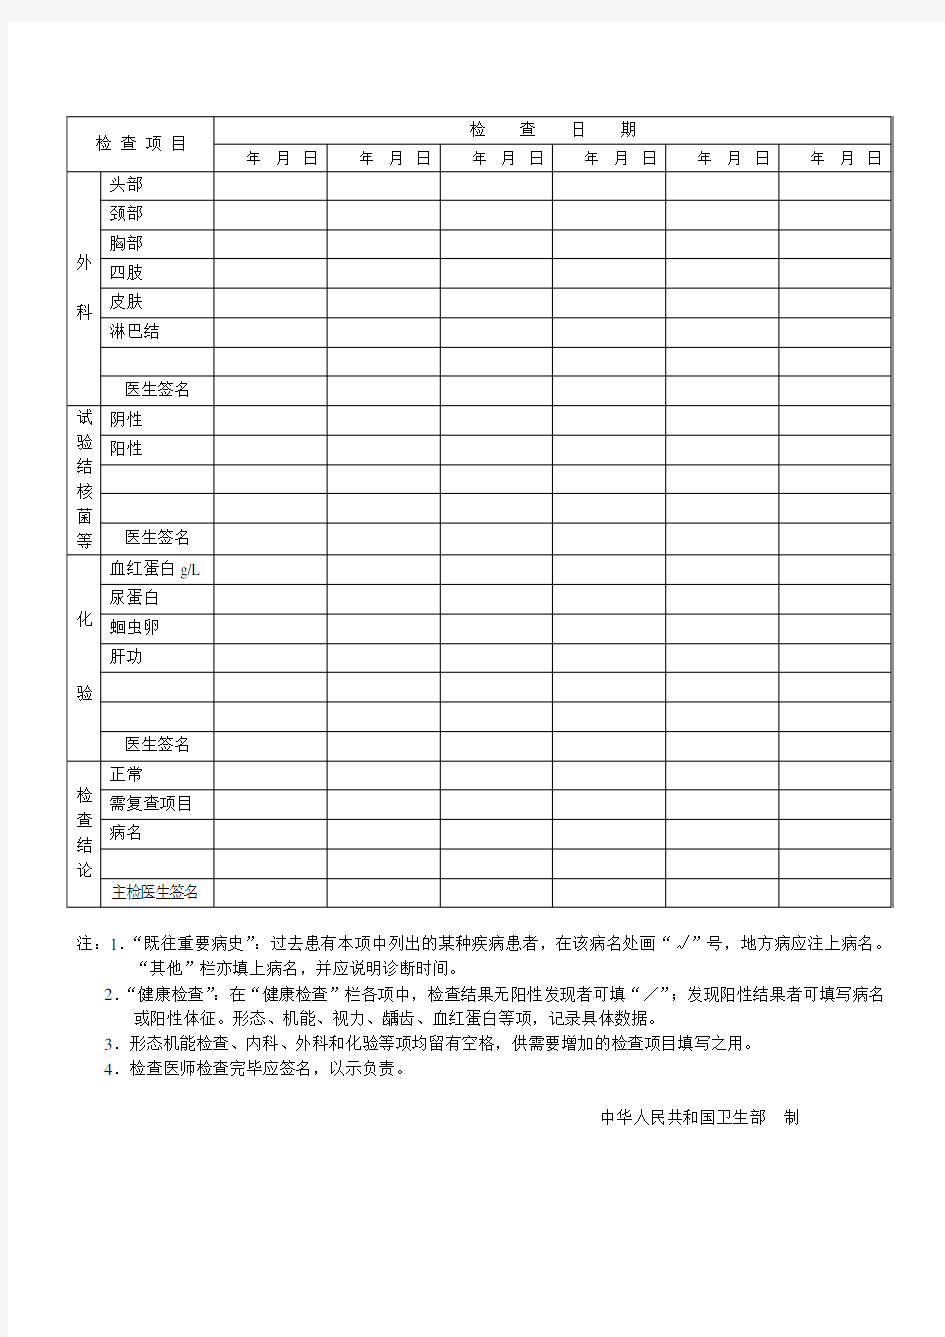 学生健康检查表(中华人民共和国预防性健康检查用表)